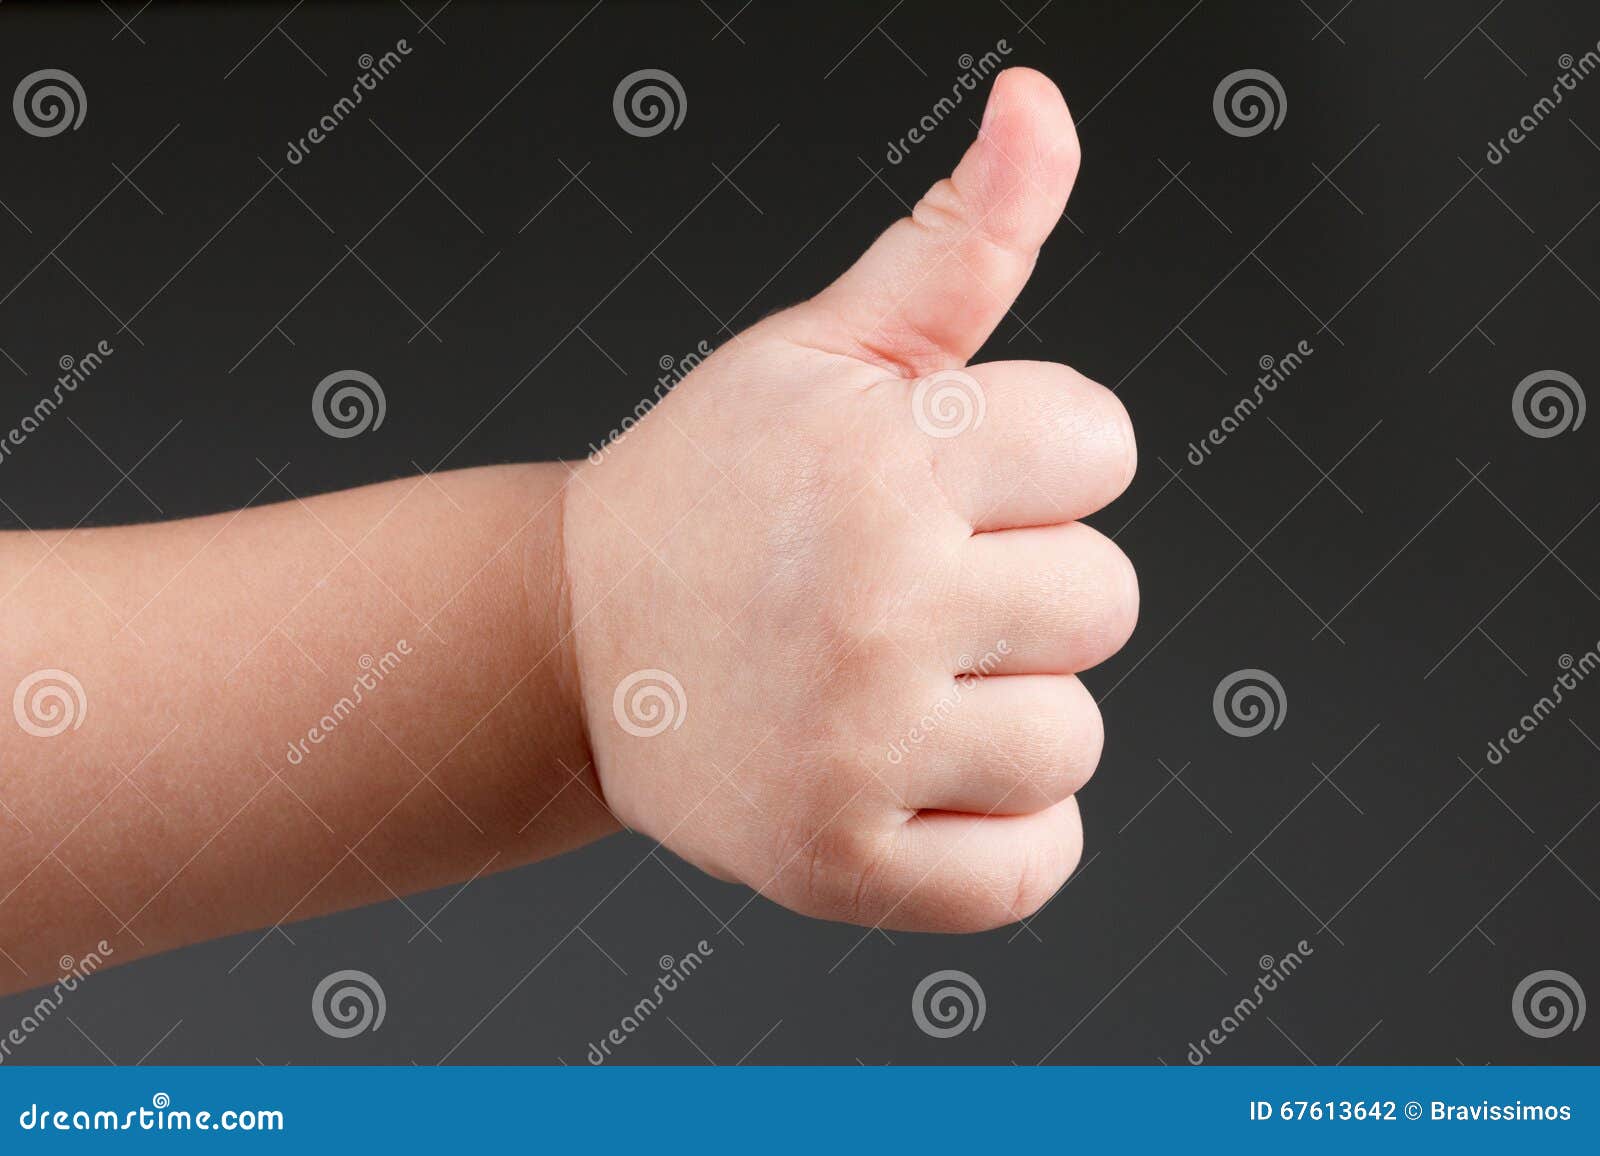 Палец толстый и большой. Рука большой палец вверх. Детские пухлые руки. Класс жест рукой. Ладонь с оттопыренным большим пальцем.